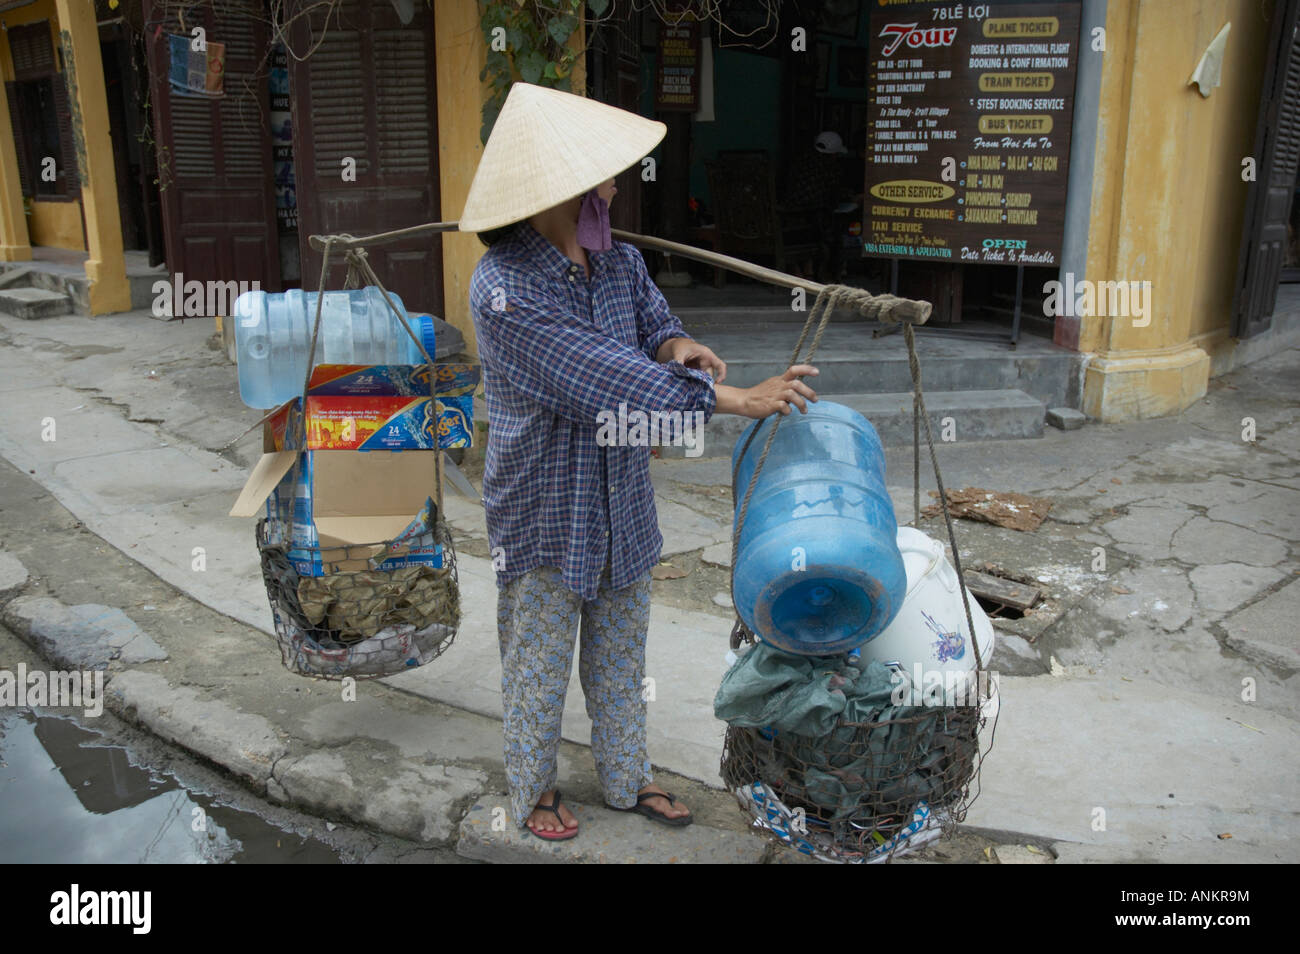 Street Hawker, Hoi An, Vietnam Stock Photo